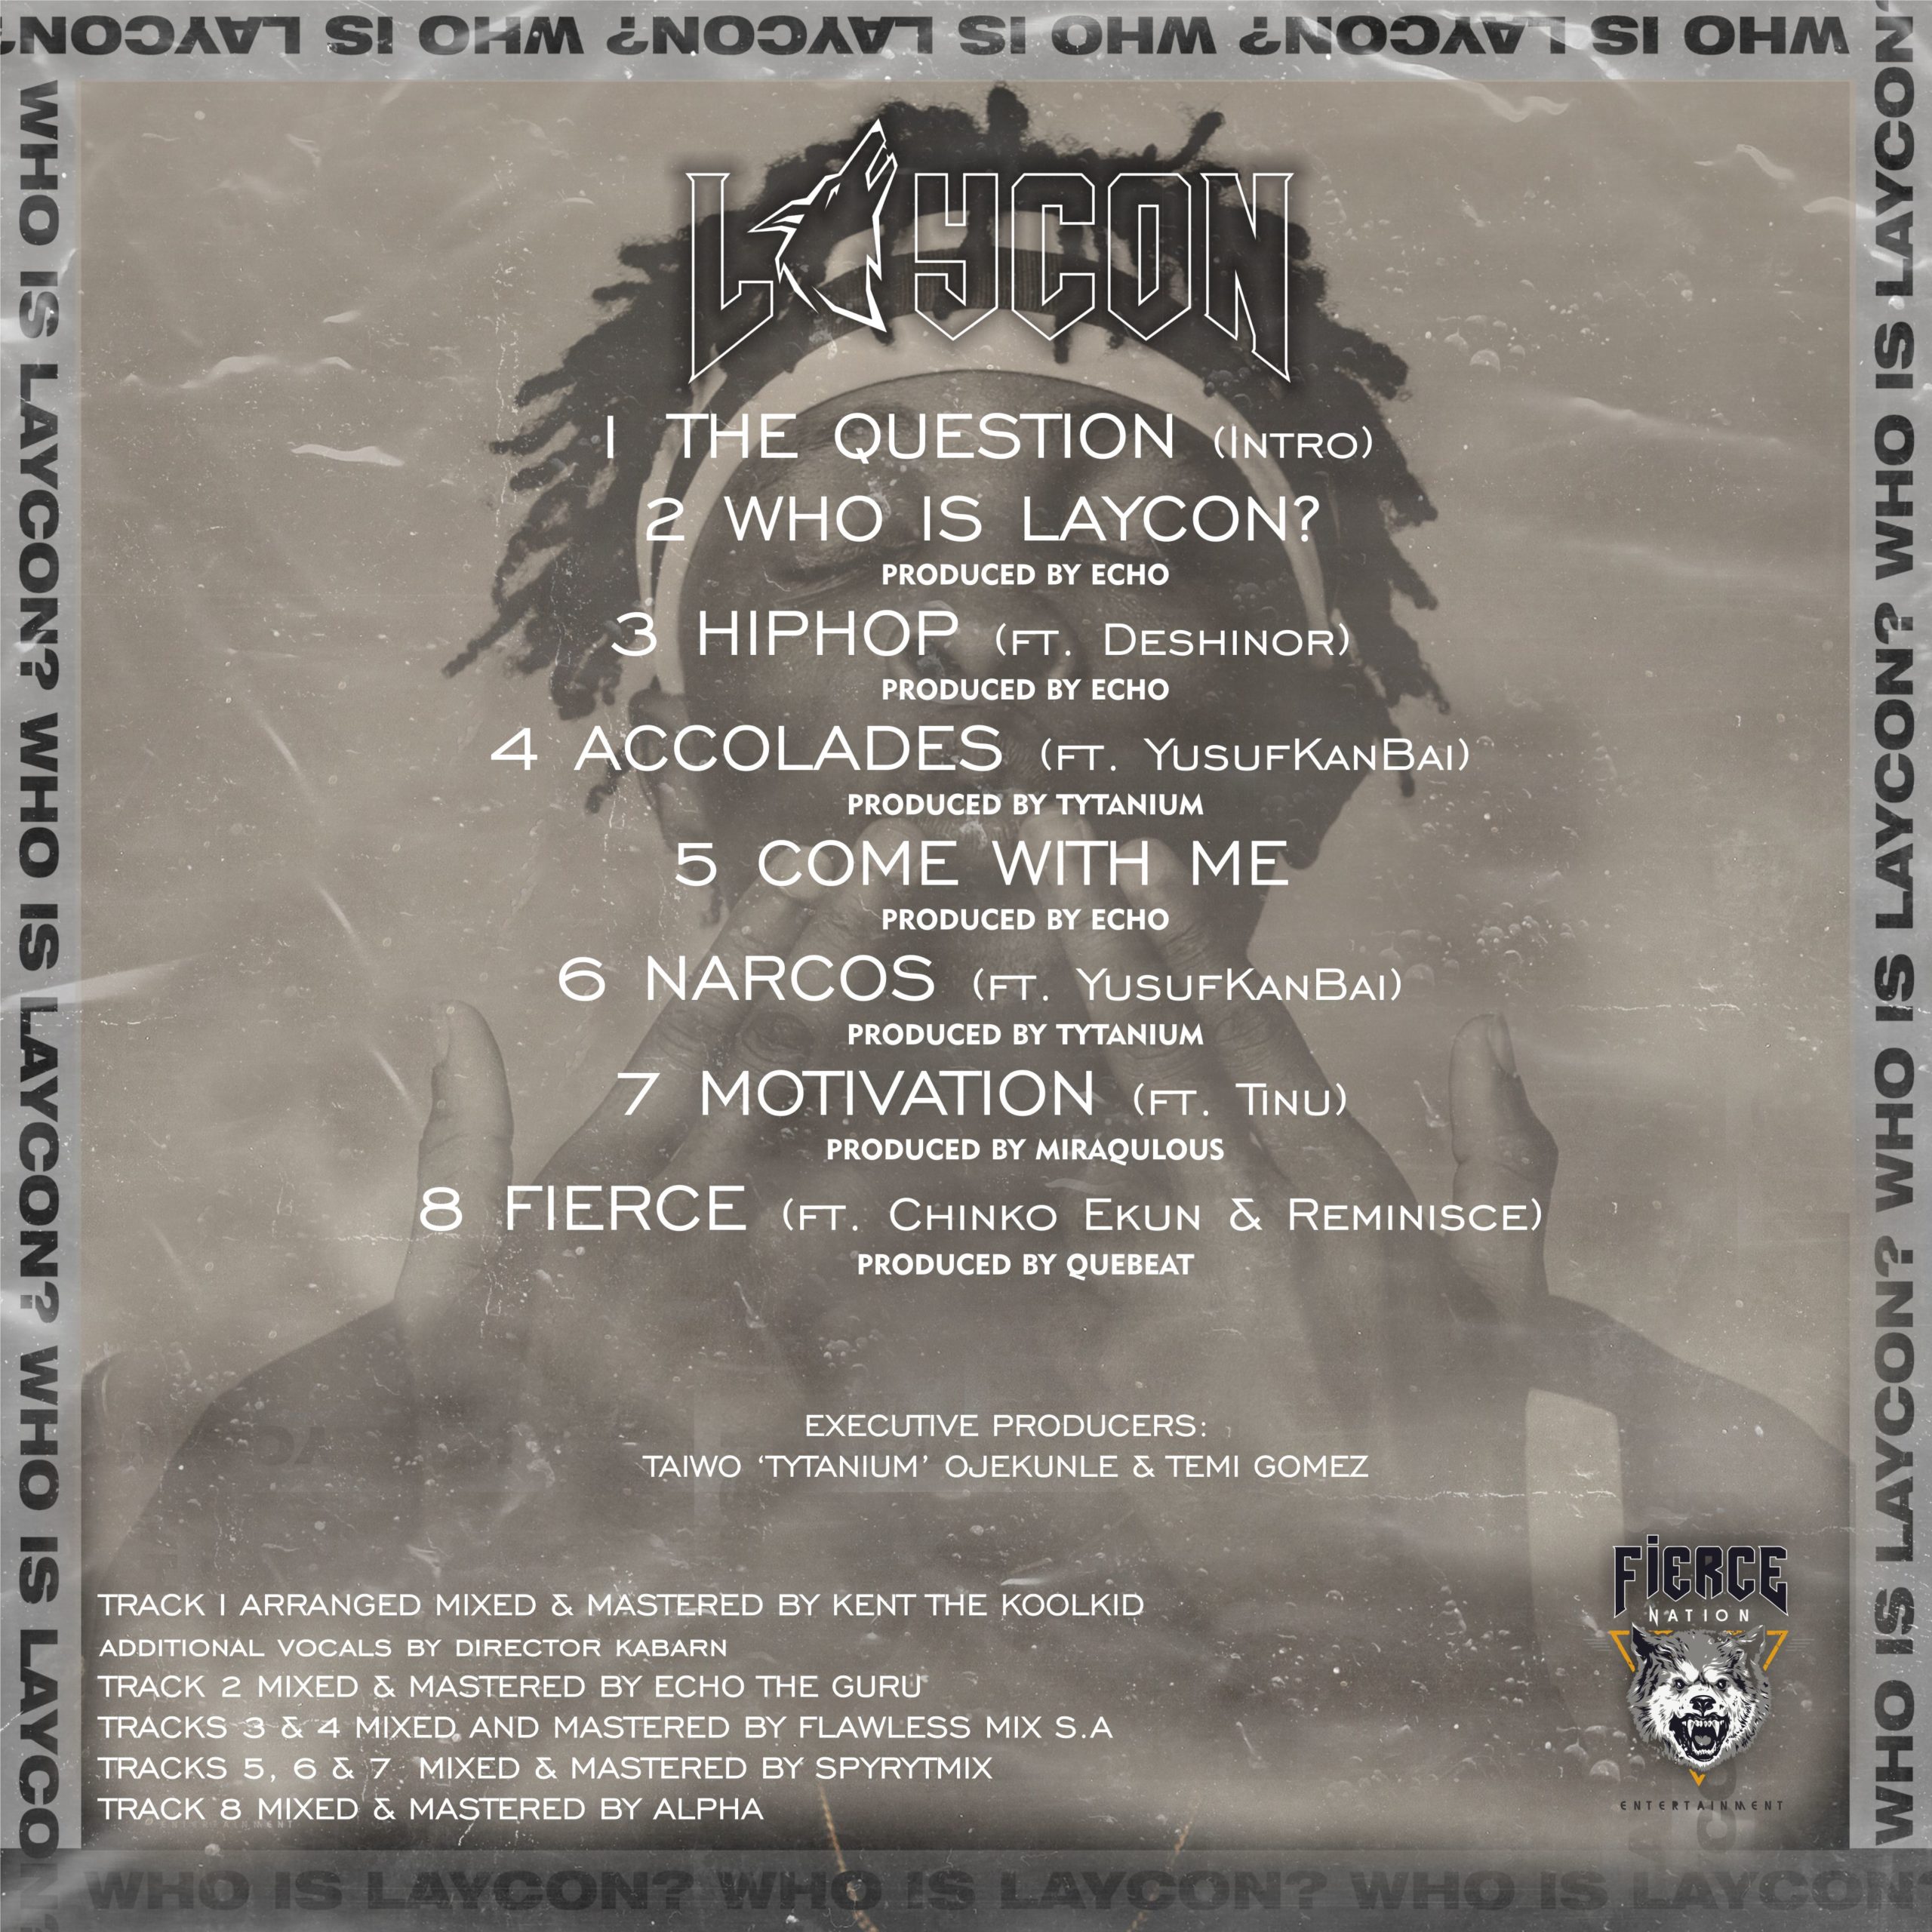 LAYCON feat. Reminisce & Chinko Ekun - Fierce Lyrics